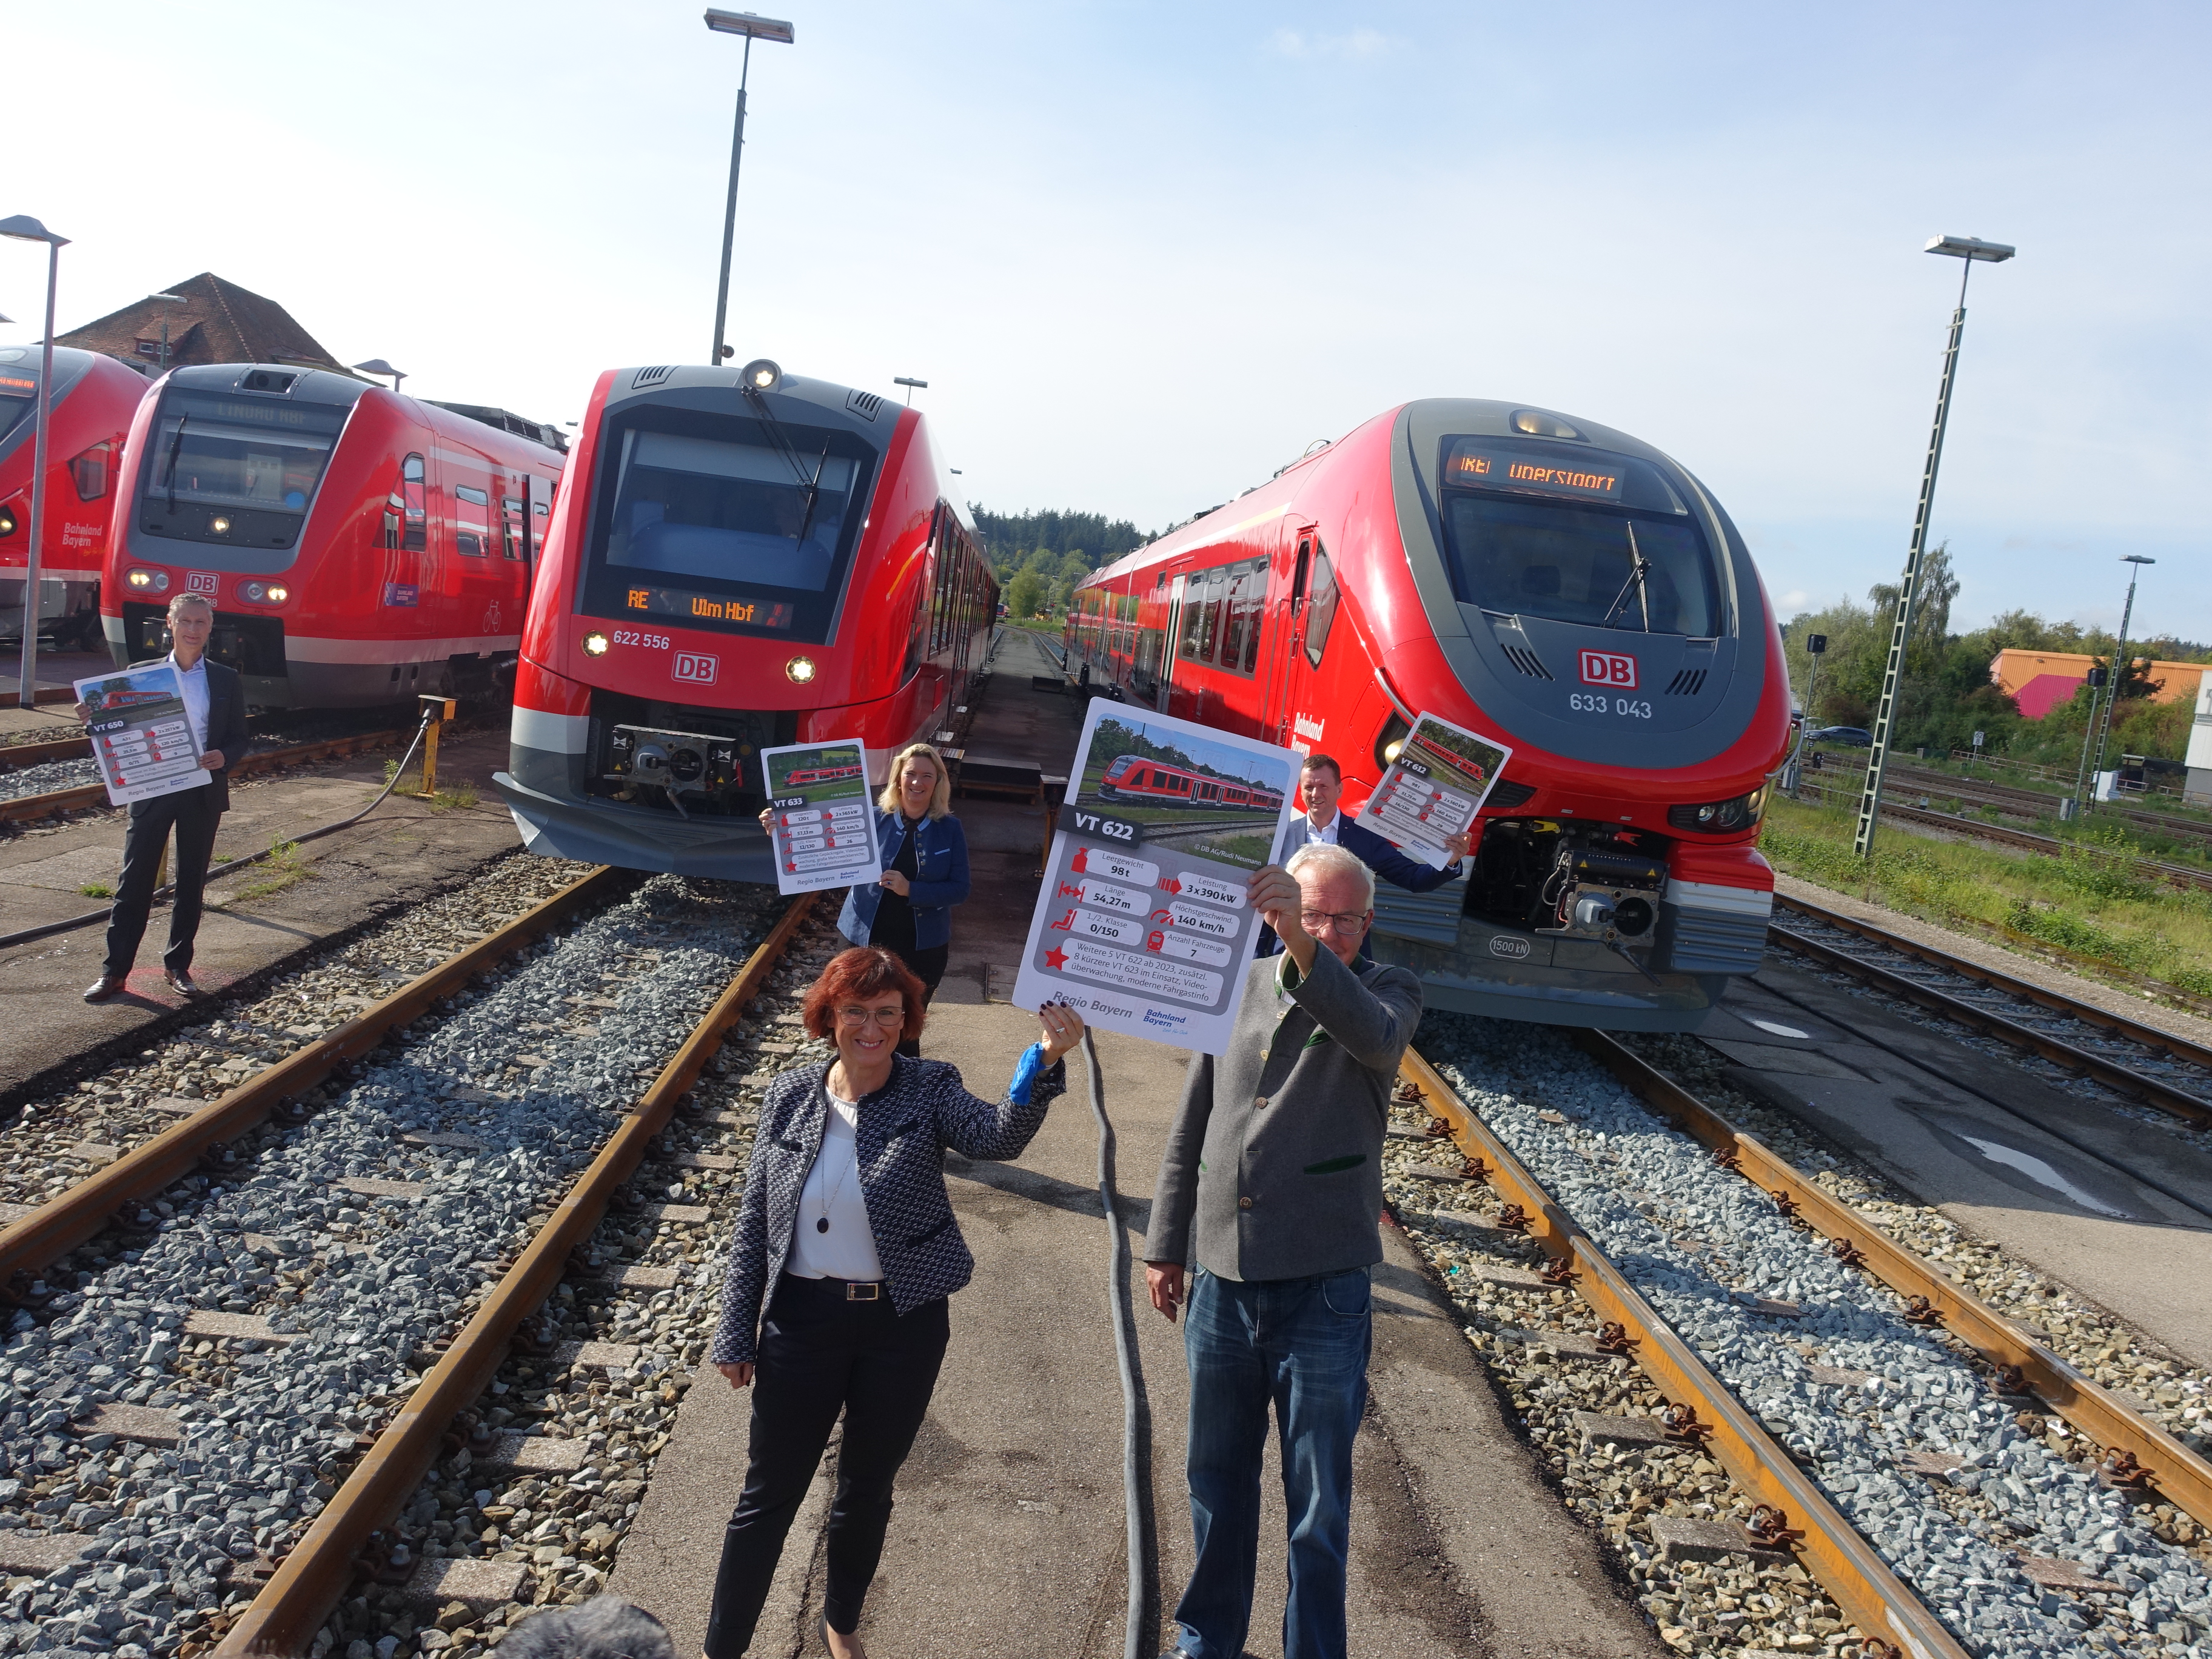 DB Regio rollt mit neuer Fahrzeugflotte im Allgäu an